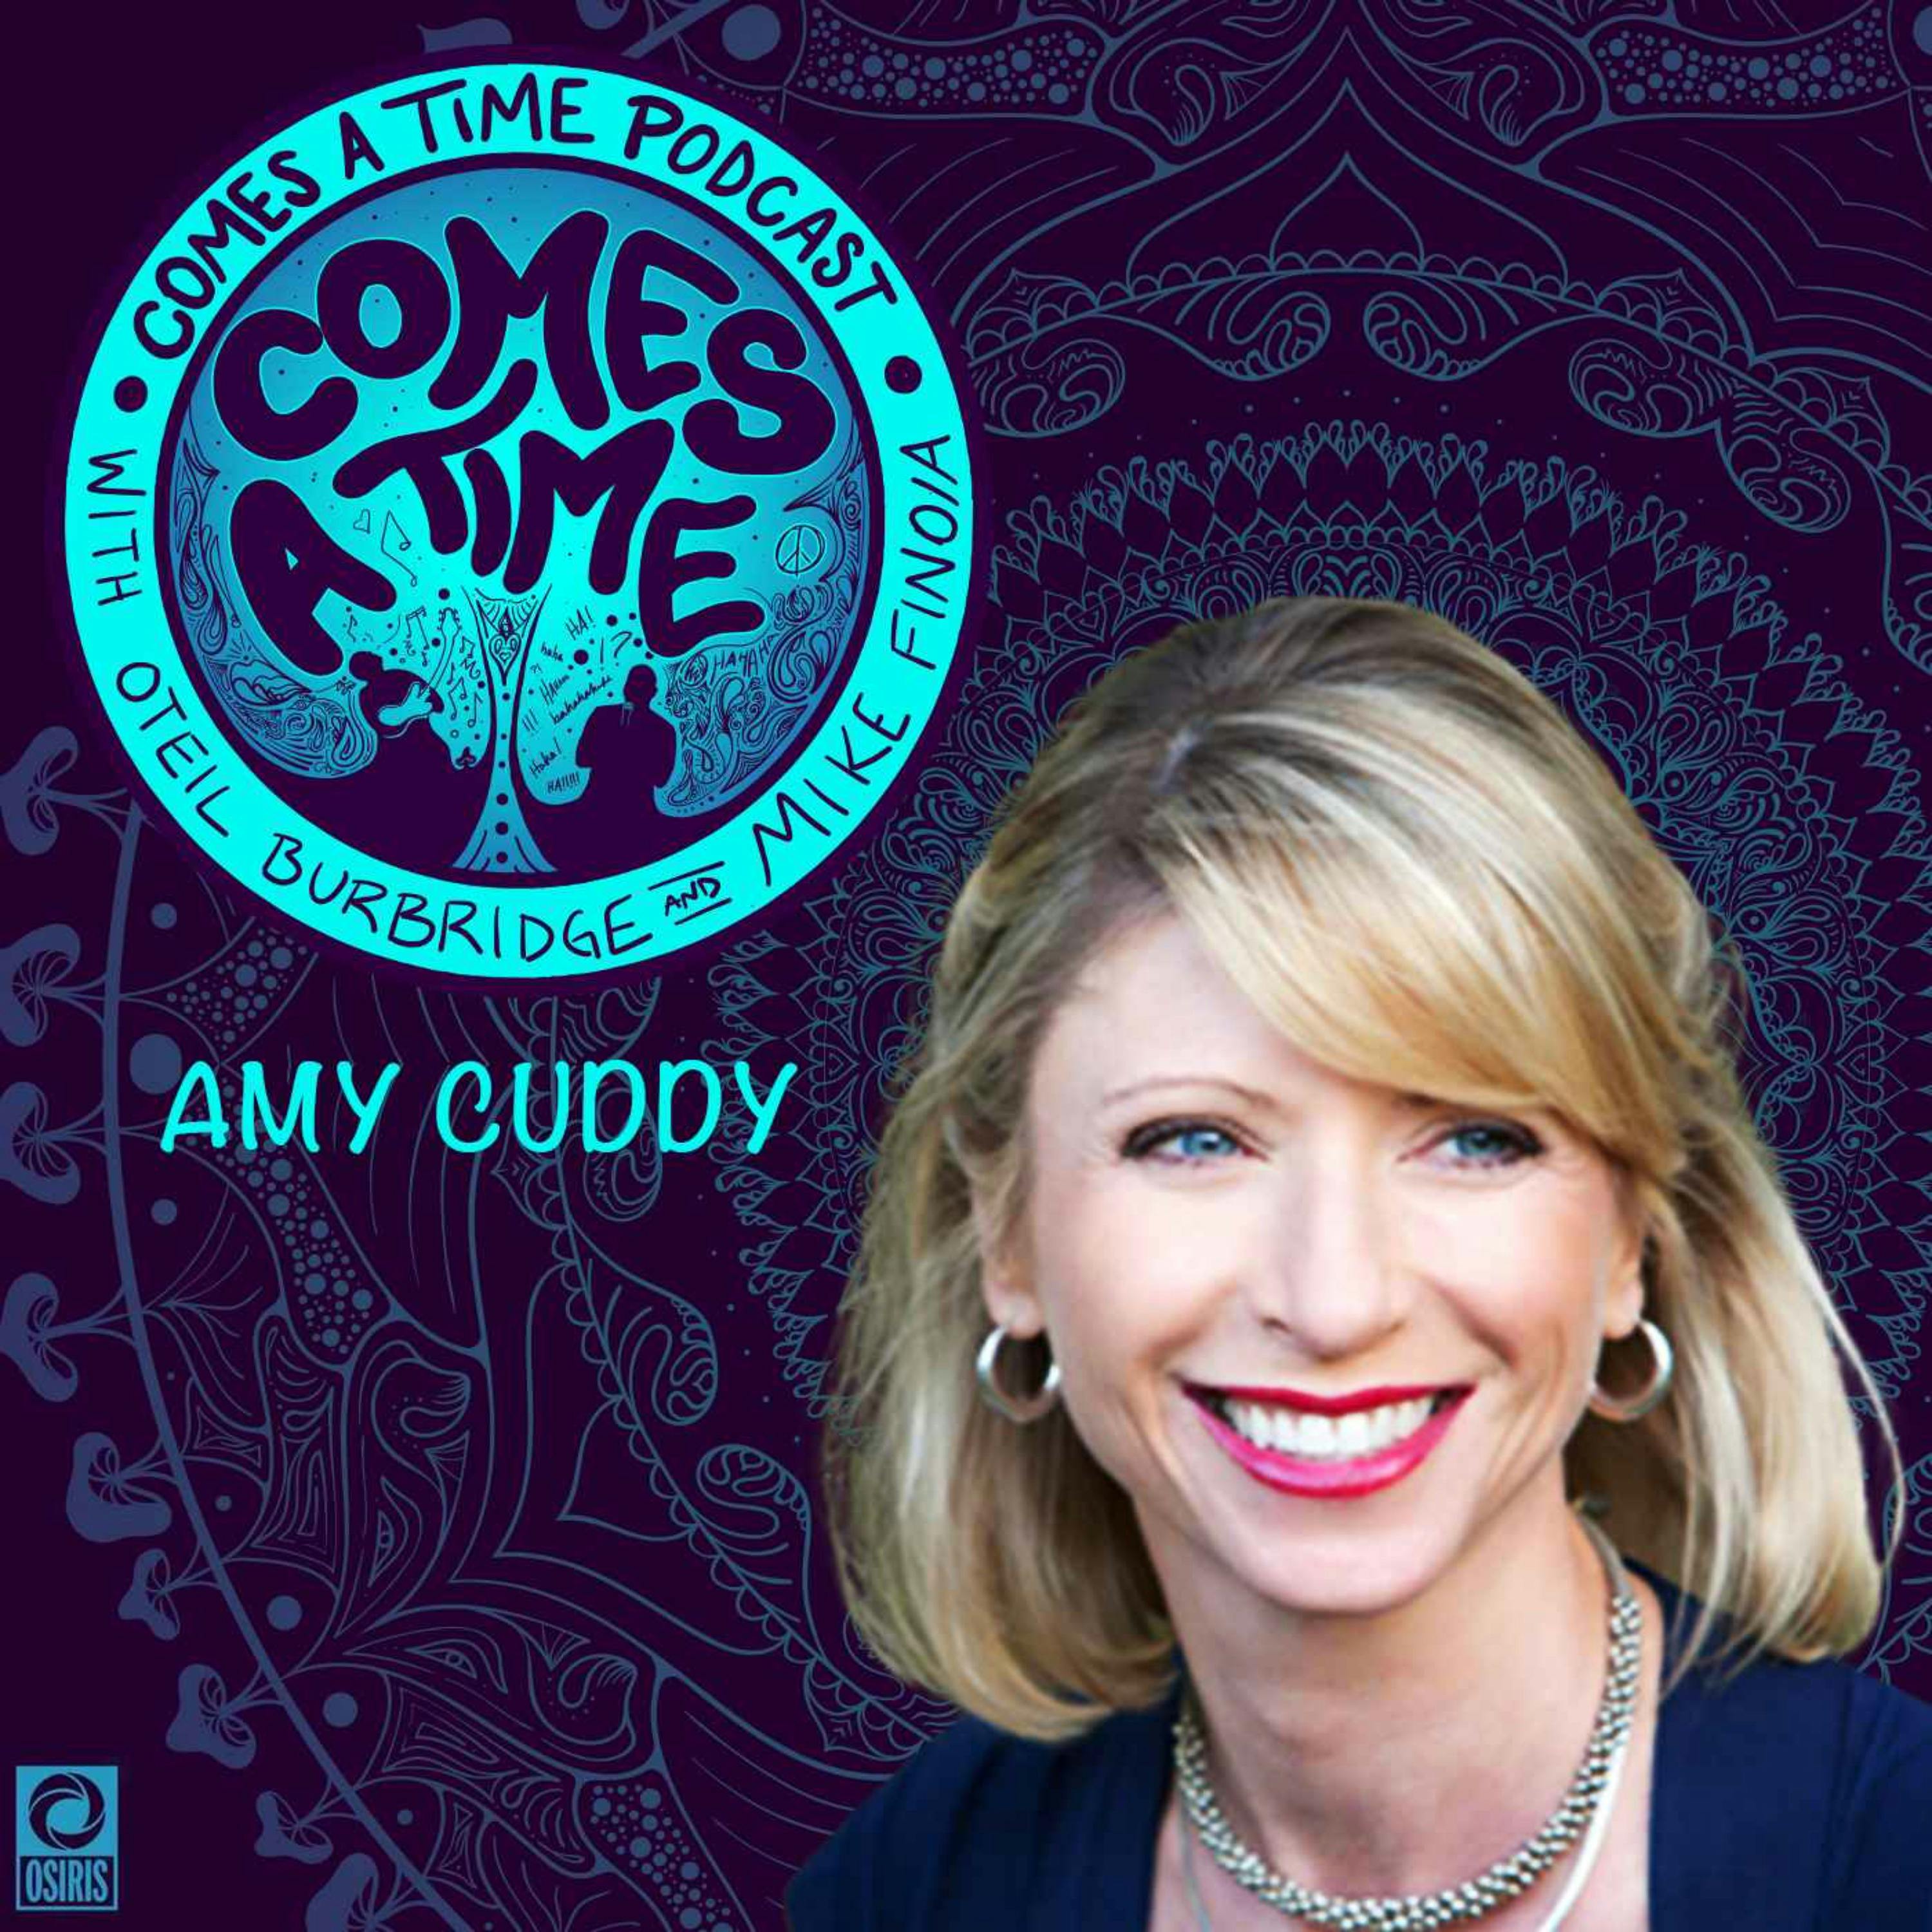 Amy Cuddy